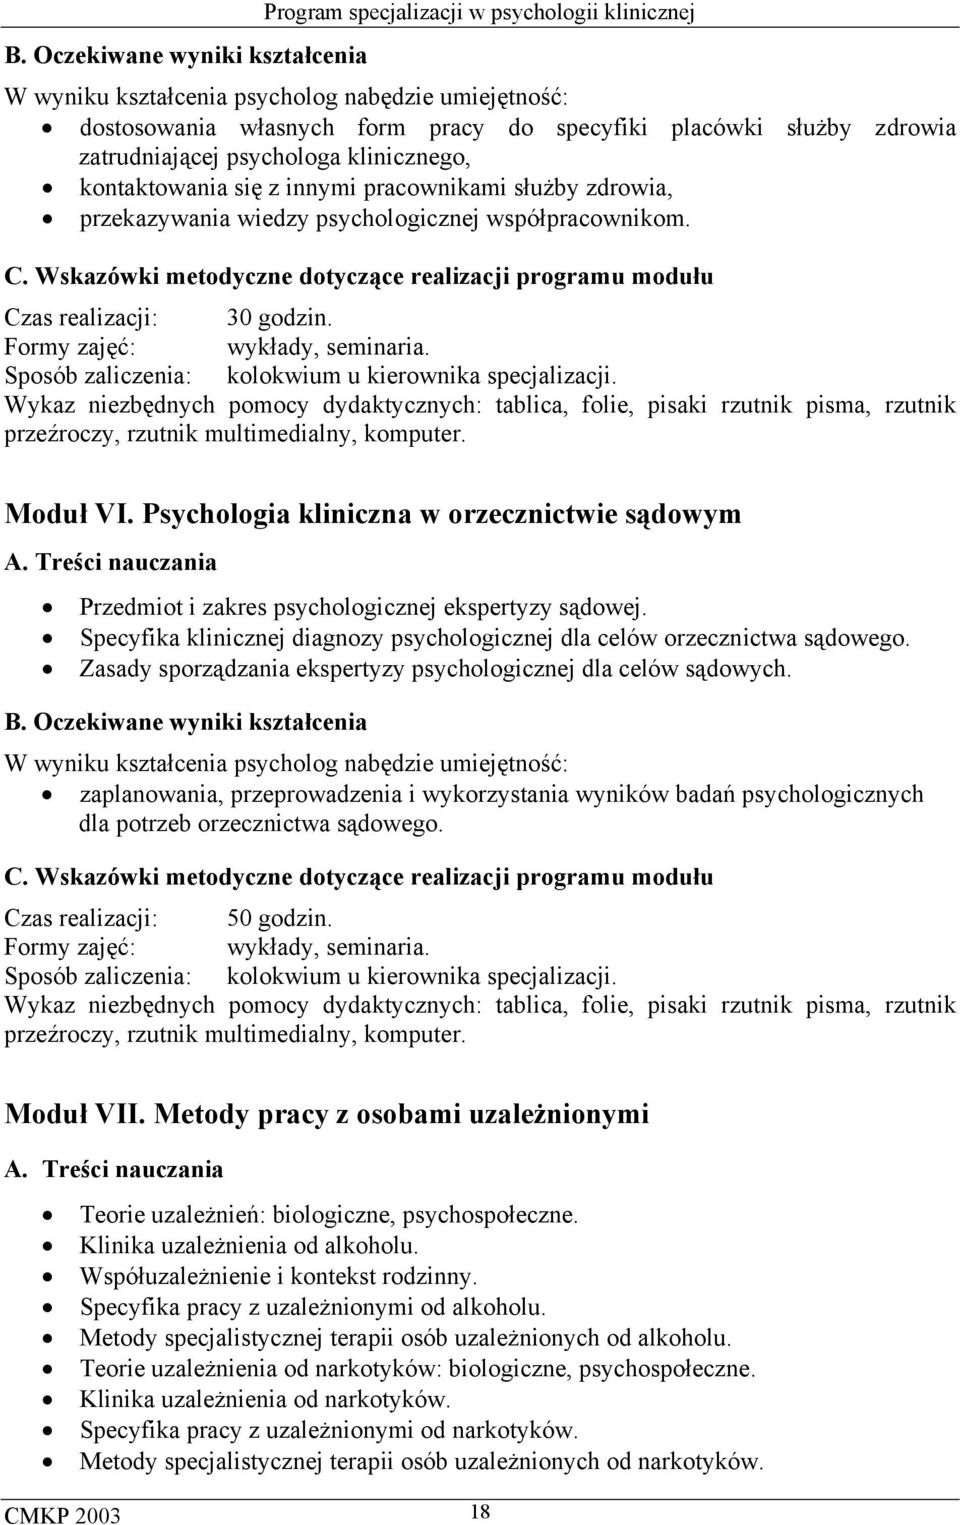 Specyfika klinicznej diagnozy psychologicznej dla celów orzecznictwa sądowego. Zasady sporządzania ekspertyzy psychologicznej dla celów sądowych.